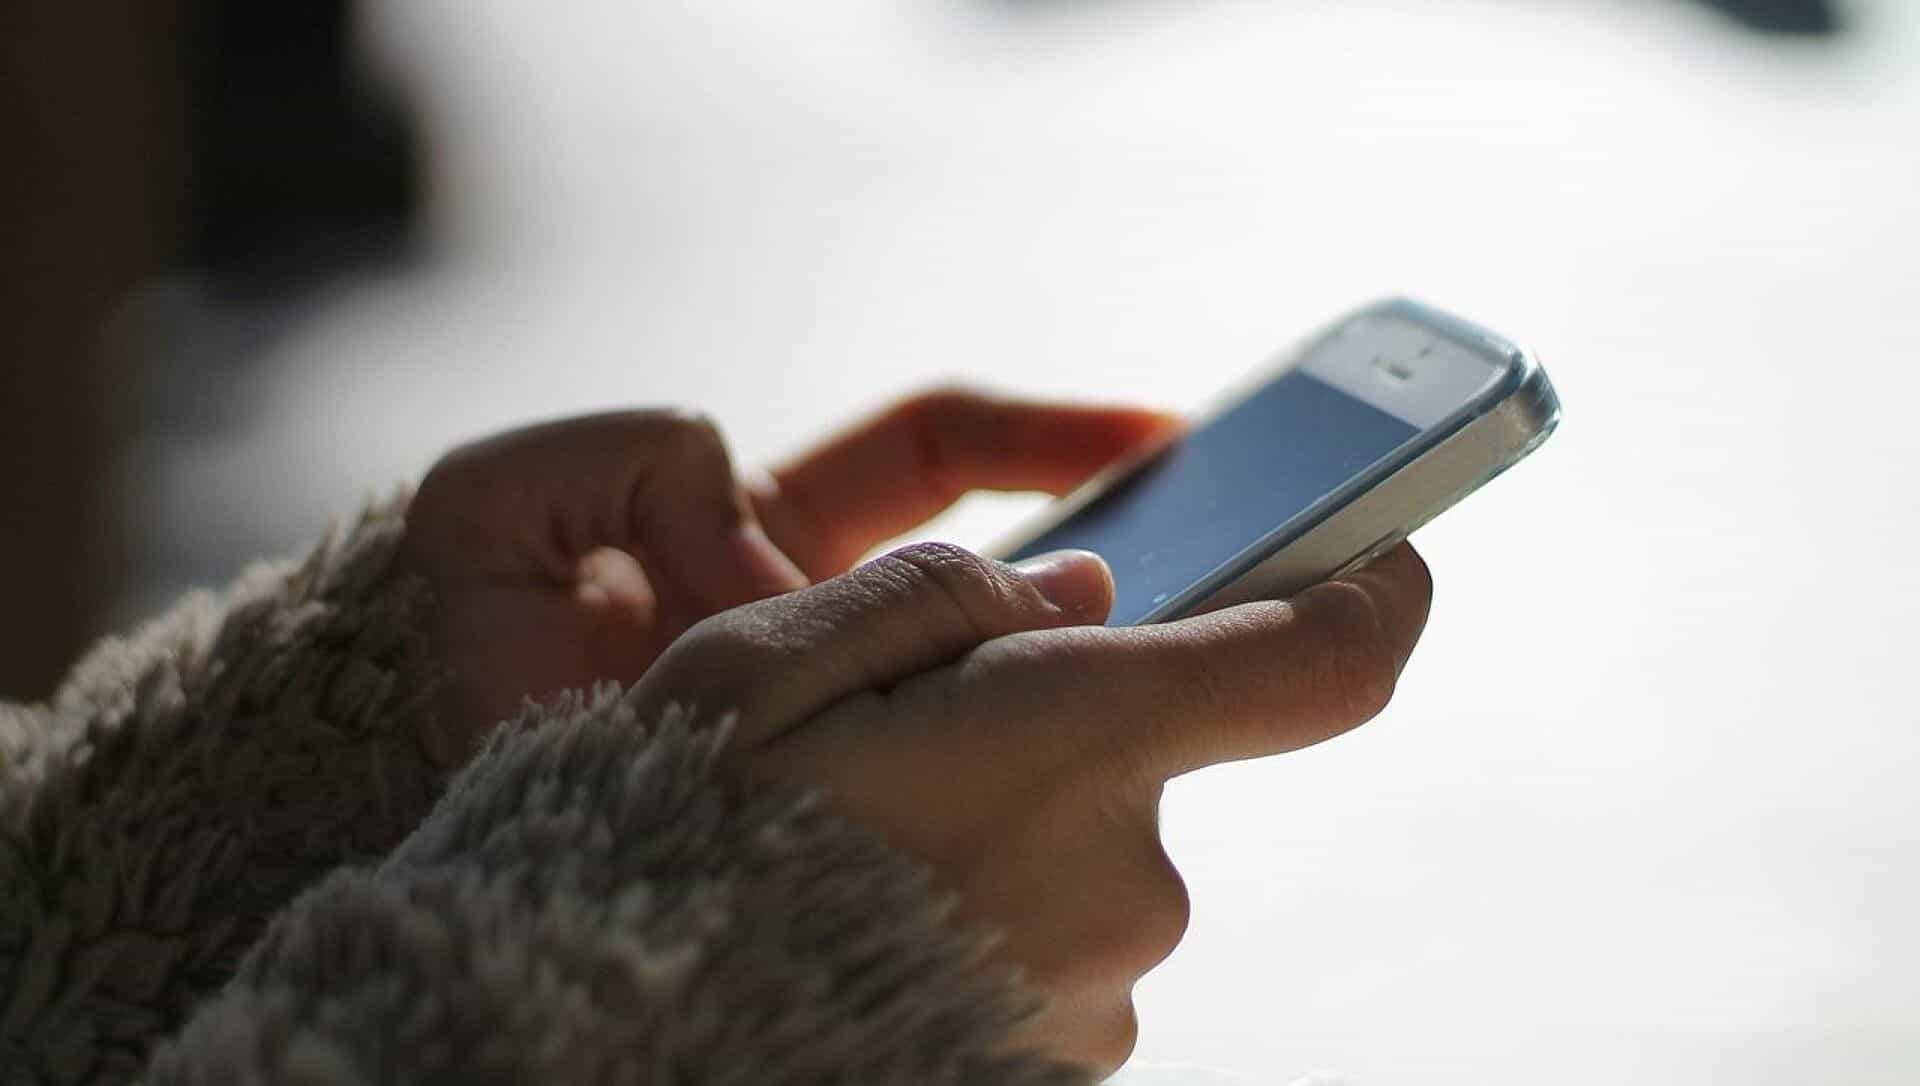 Кыргызстанцев могут обязать регистрировать смартфоны за 700 сомов